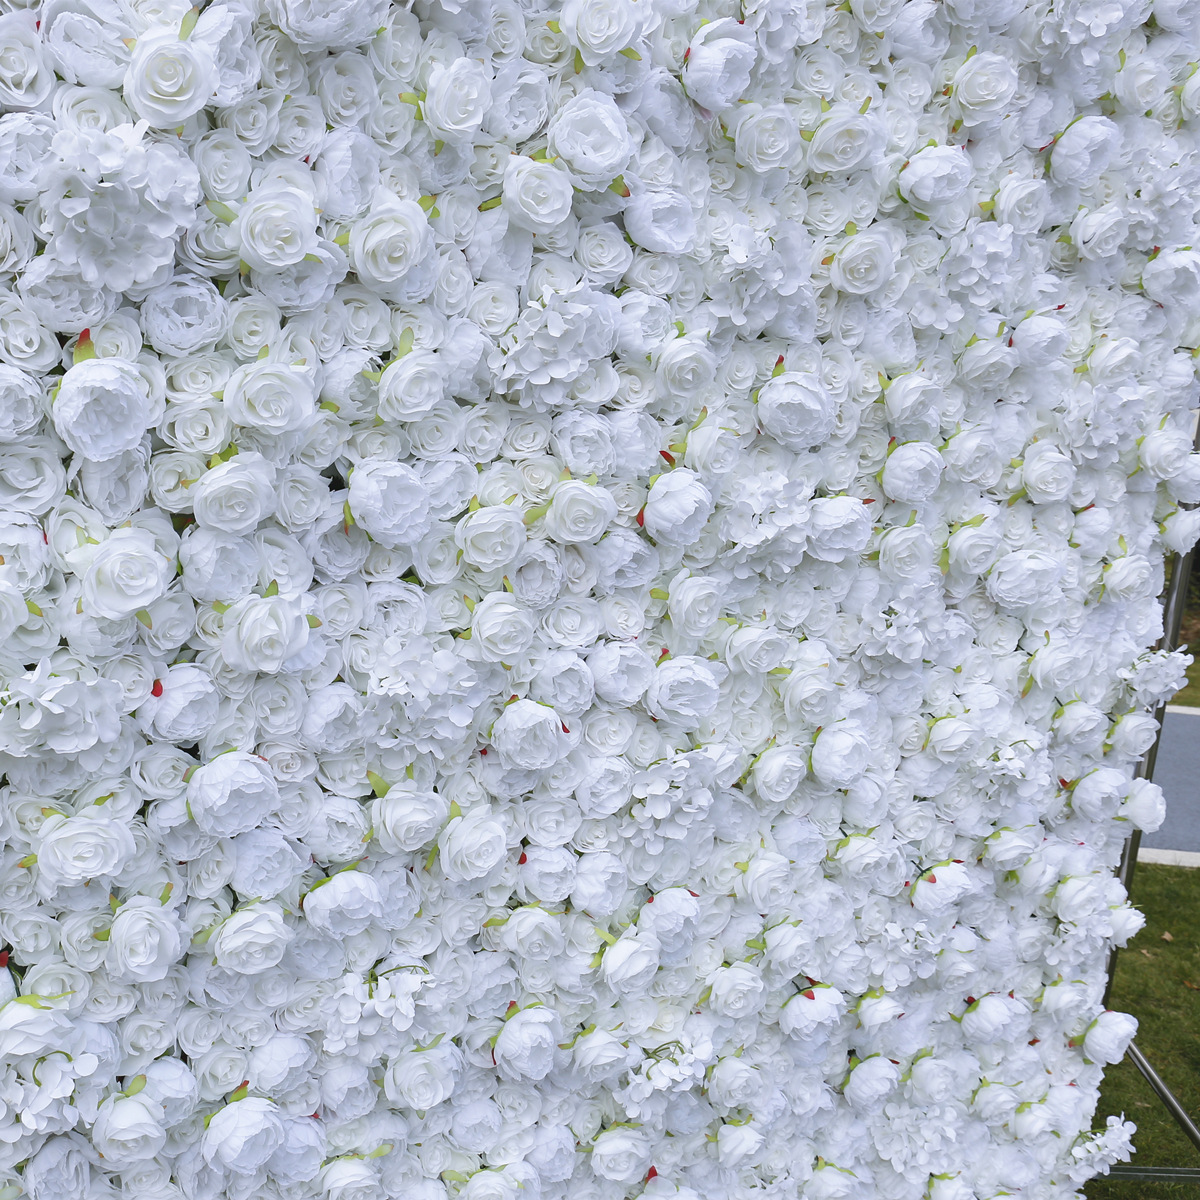 Fabryk direkte ferkeap suver wite doek boaiem simulearre blom muorre eftergrûn brulloft dekoraasje